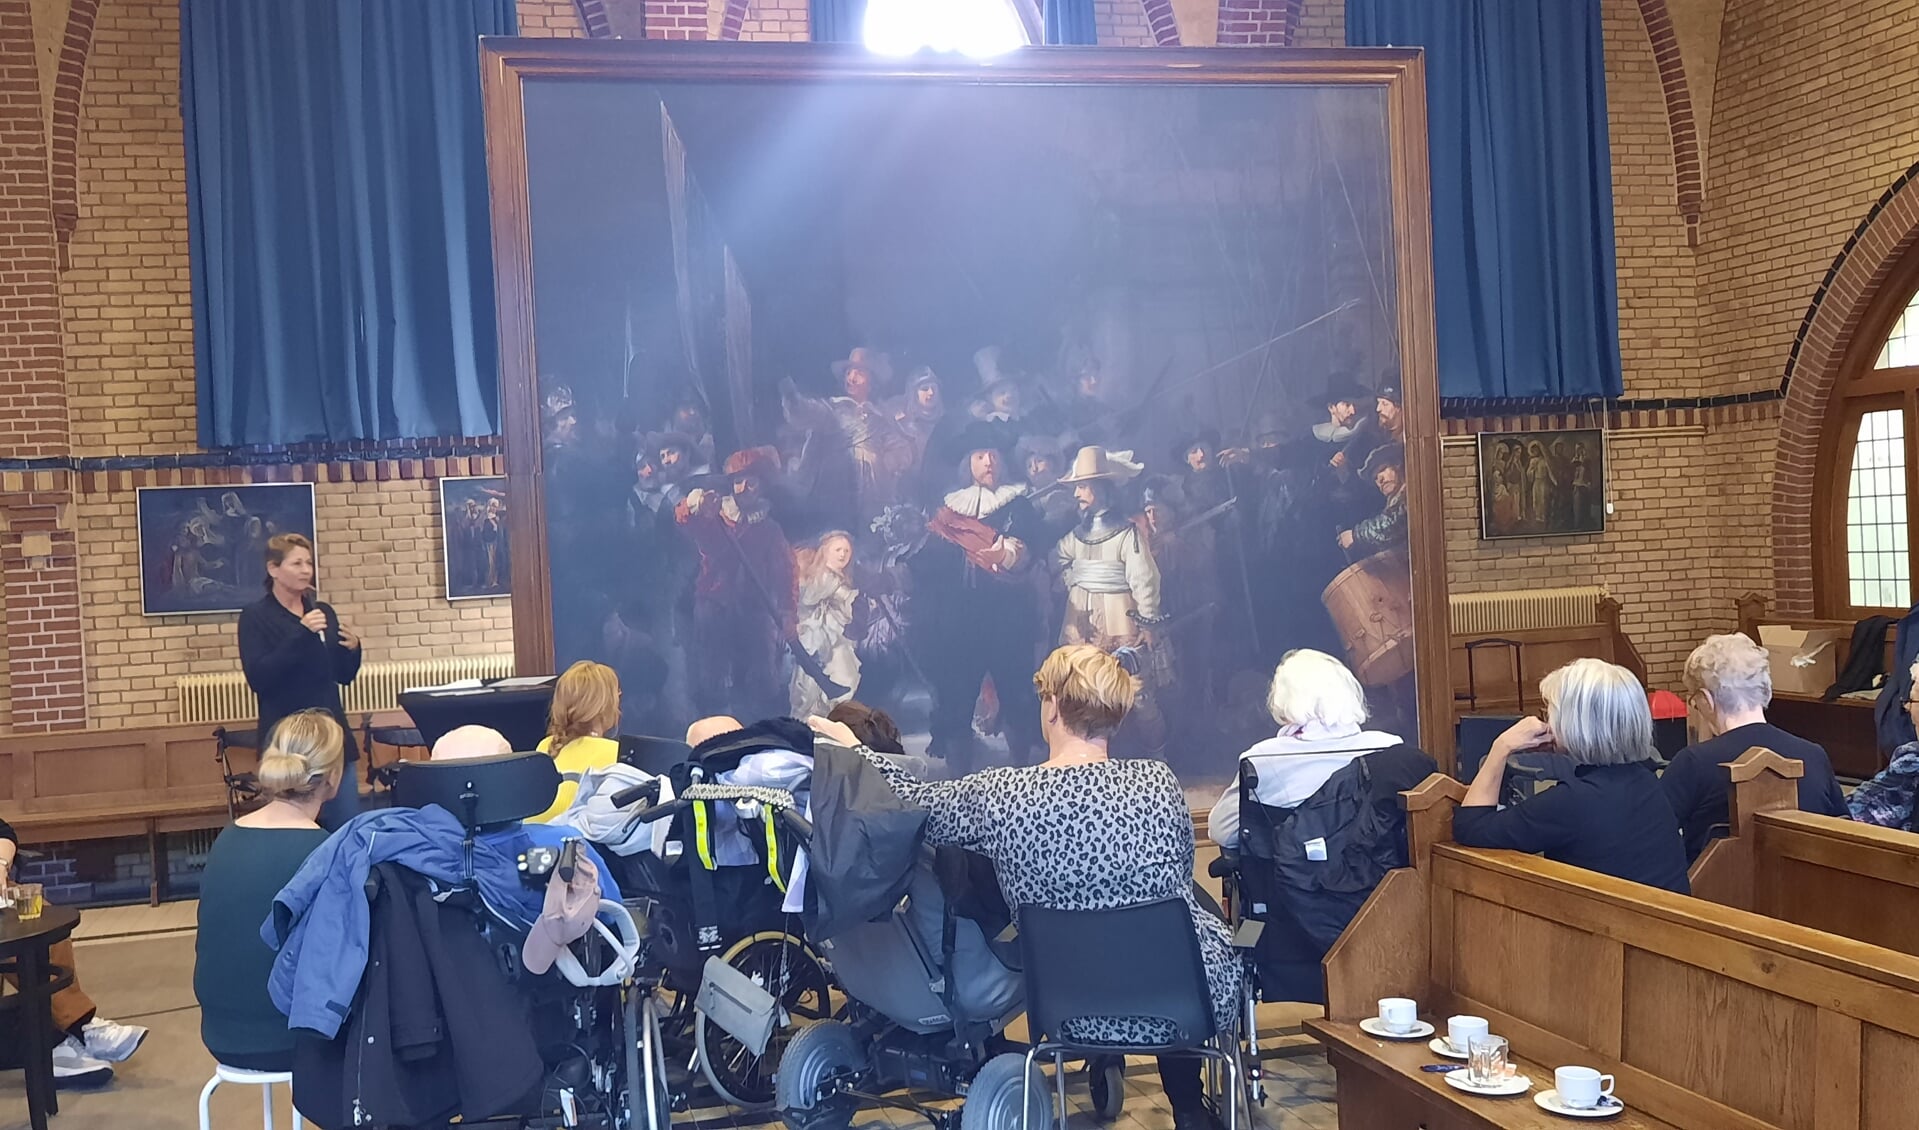 Een deskundige van het Rijksmuseum vertelt bijzondere wetenswaardigheden over het beroemde kunstwerk van Rembrandt. Foto: Kyra Broshuis